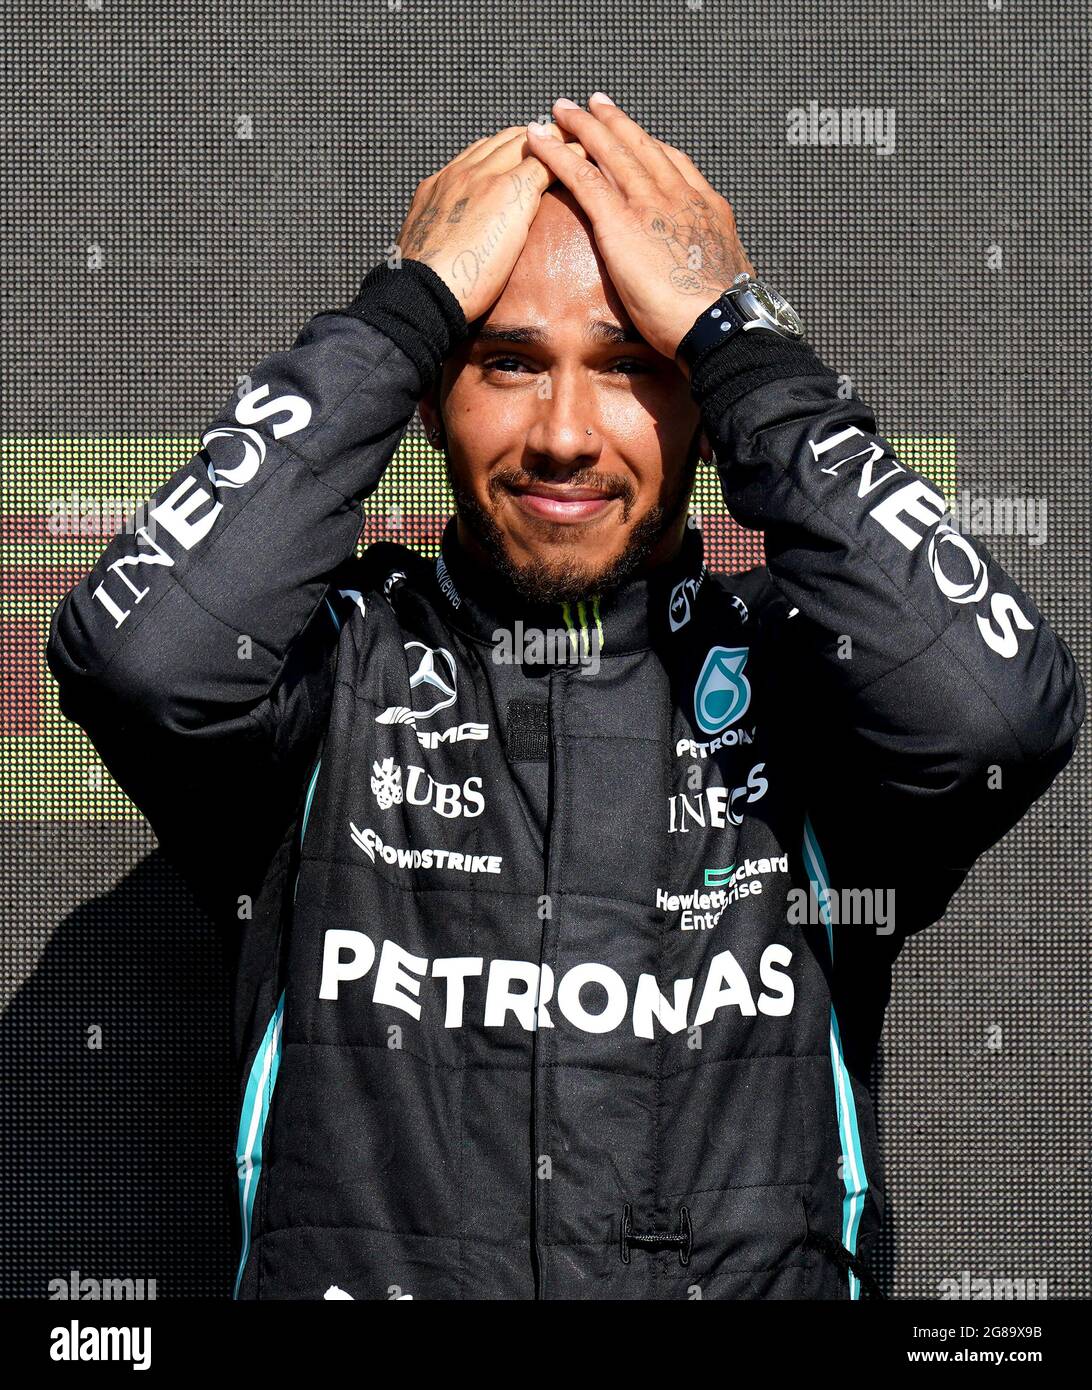 La Mercedes Lewis Hamilton festeggia la vittoria del Gran Premio di Gran Bretagna sul podio di Silverstone, Towcester. Data immagine: Domenica 18 luglio 2021. Foto Stock